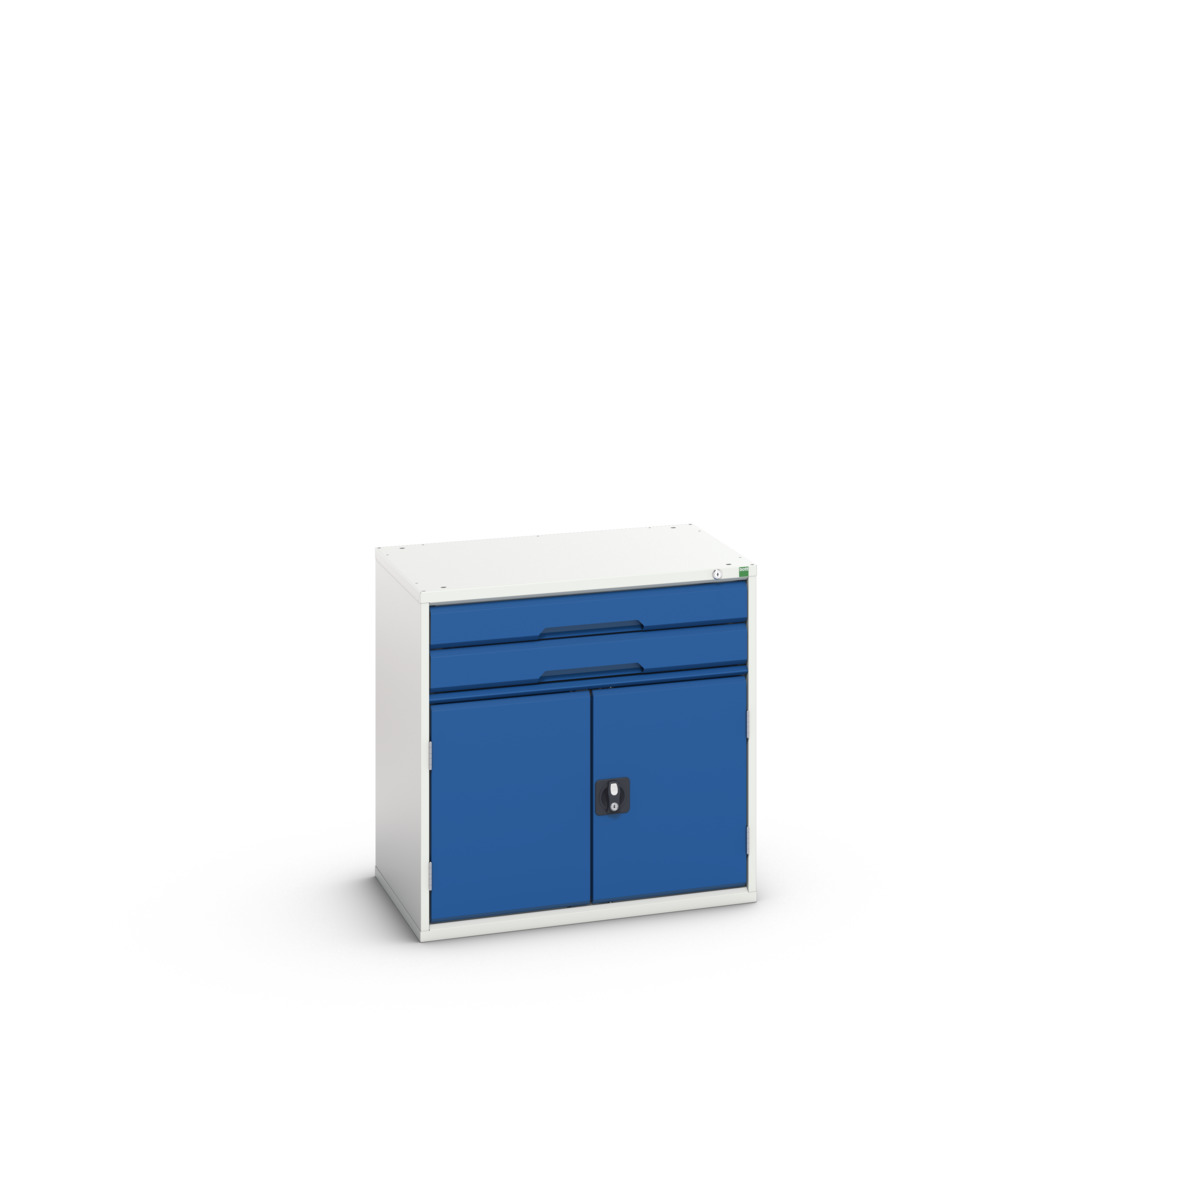 16925416.11 - verso drawer-door cabinet